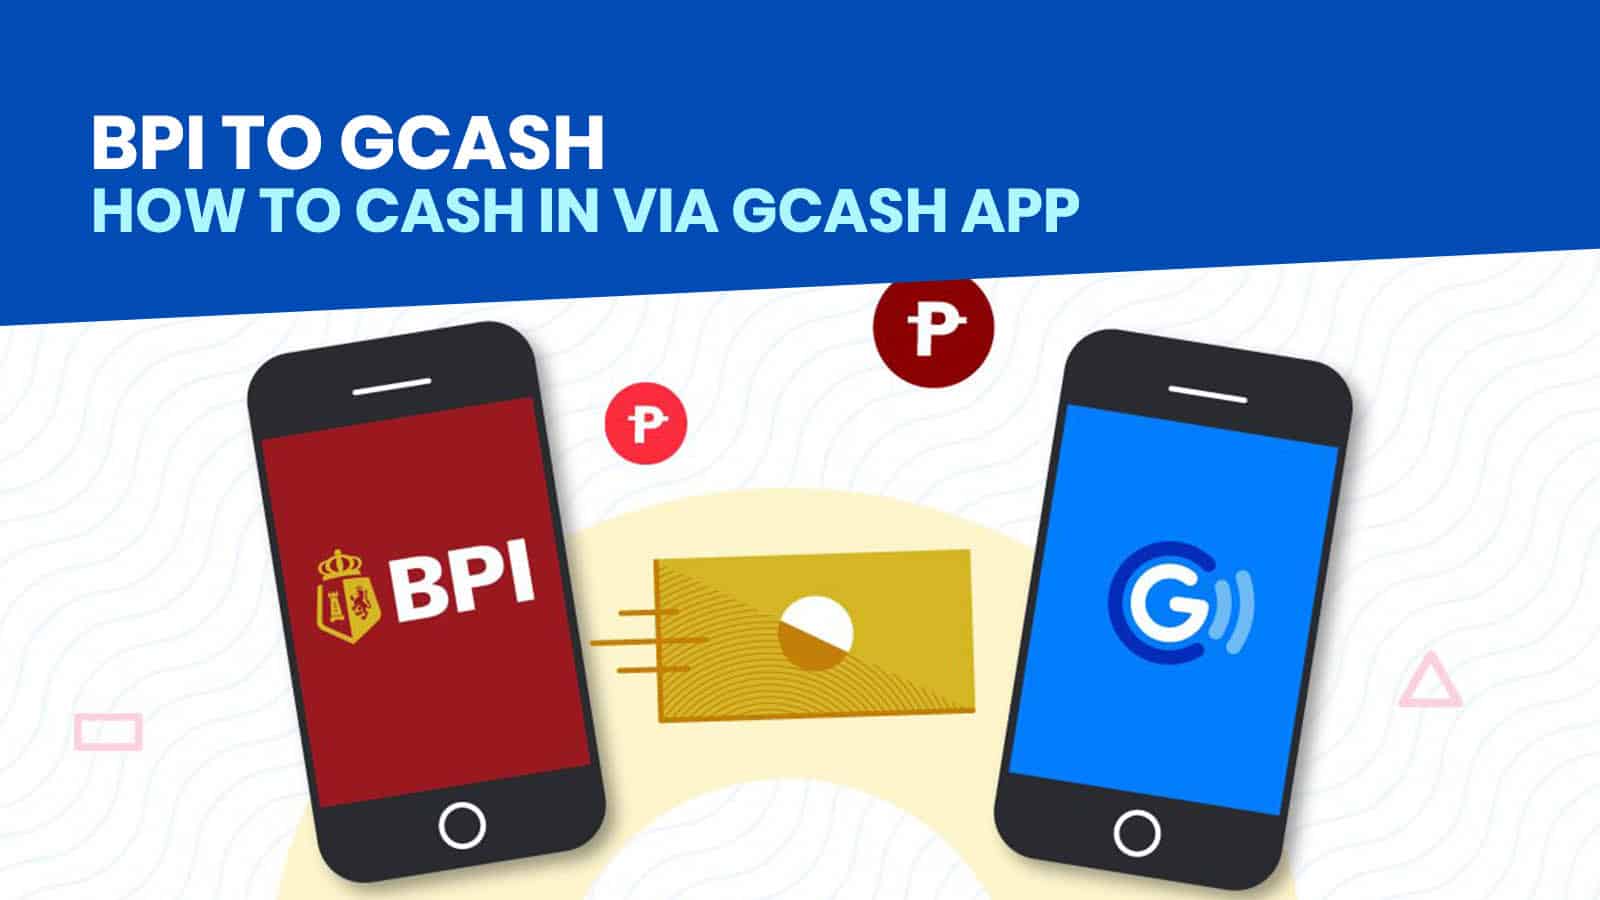 GCASH Cash In: How to Load Money from BPI via GCash App